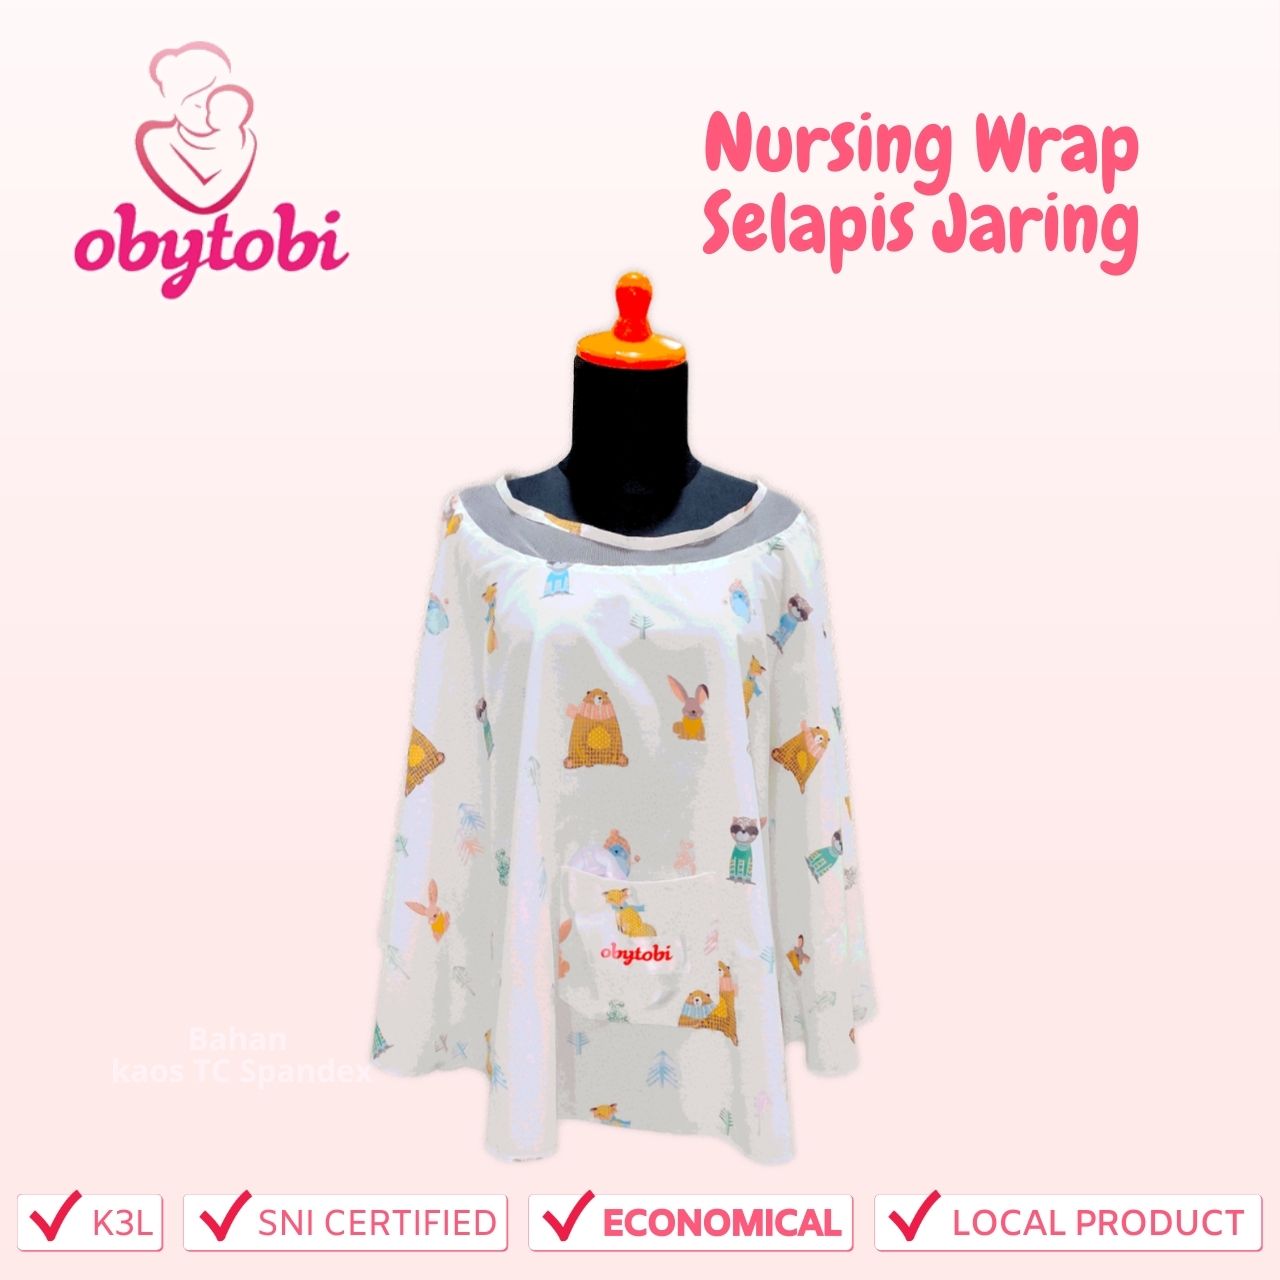 Nursing wrap selapis jaring obytobi